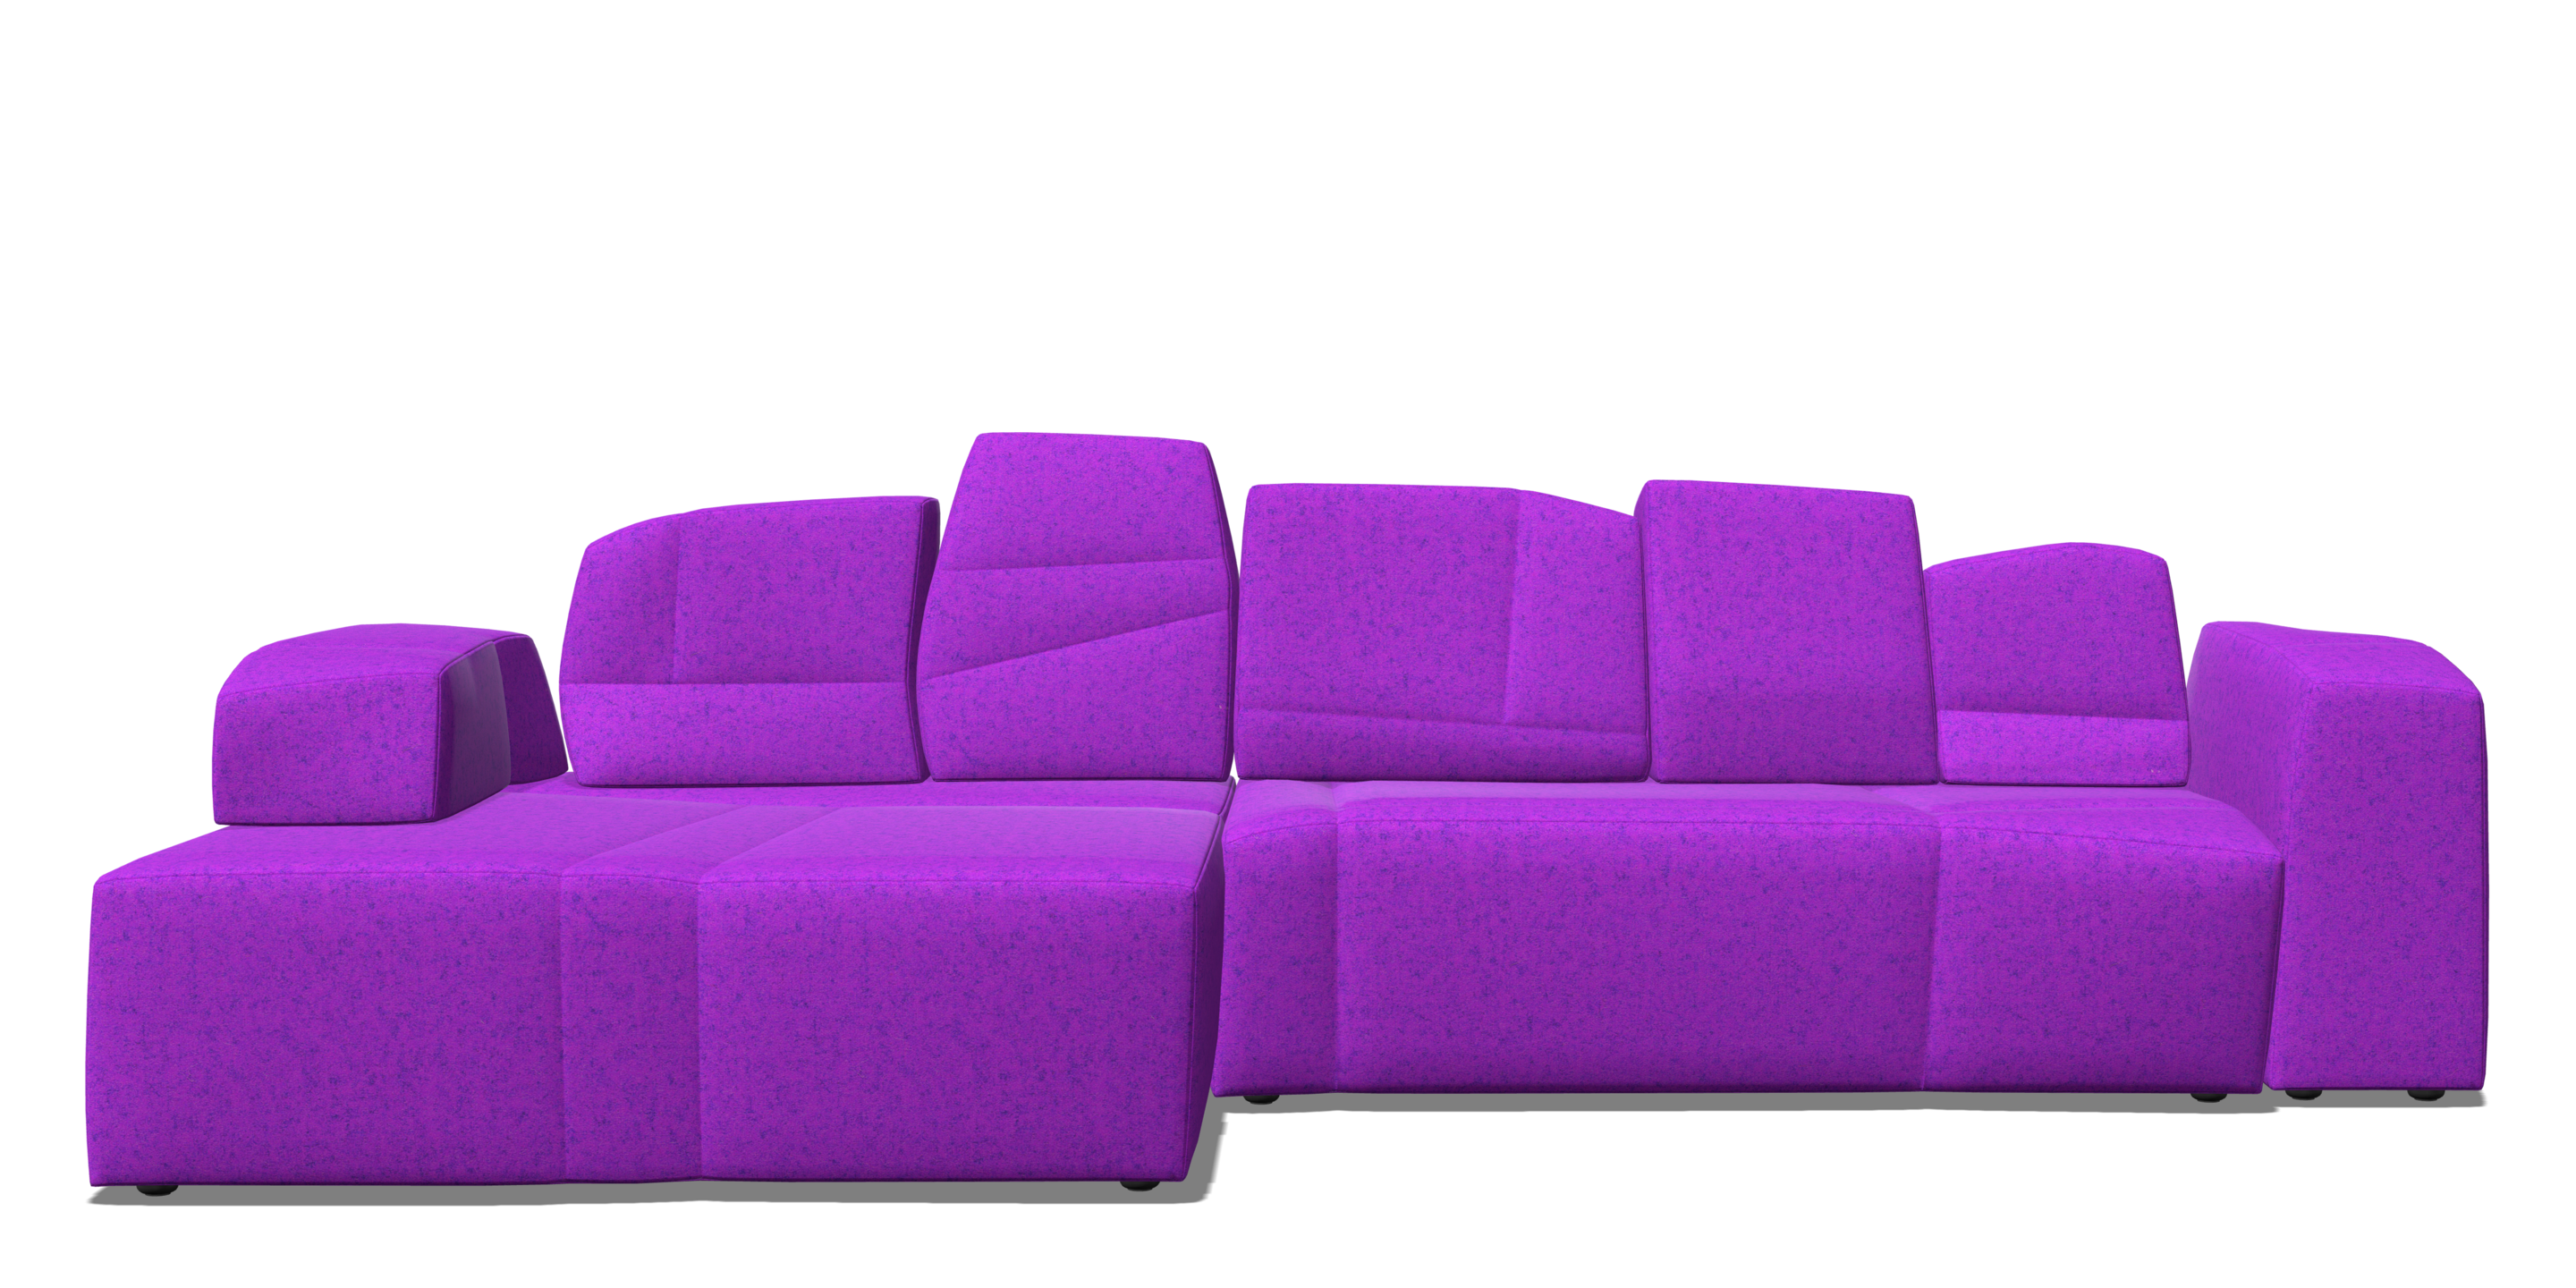 SLT Sofa left composition purple